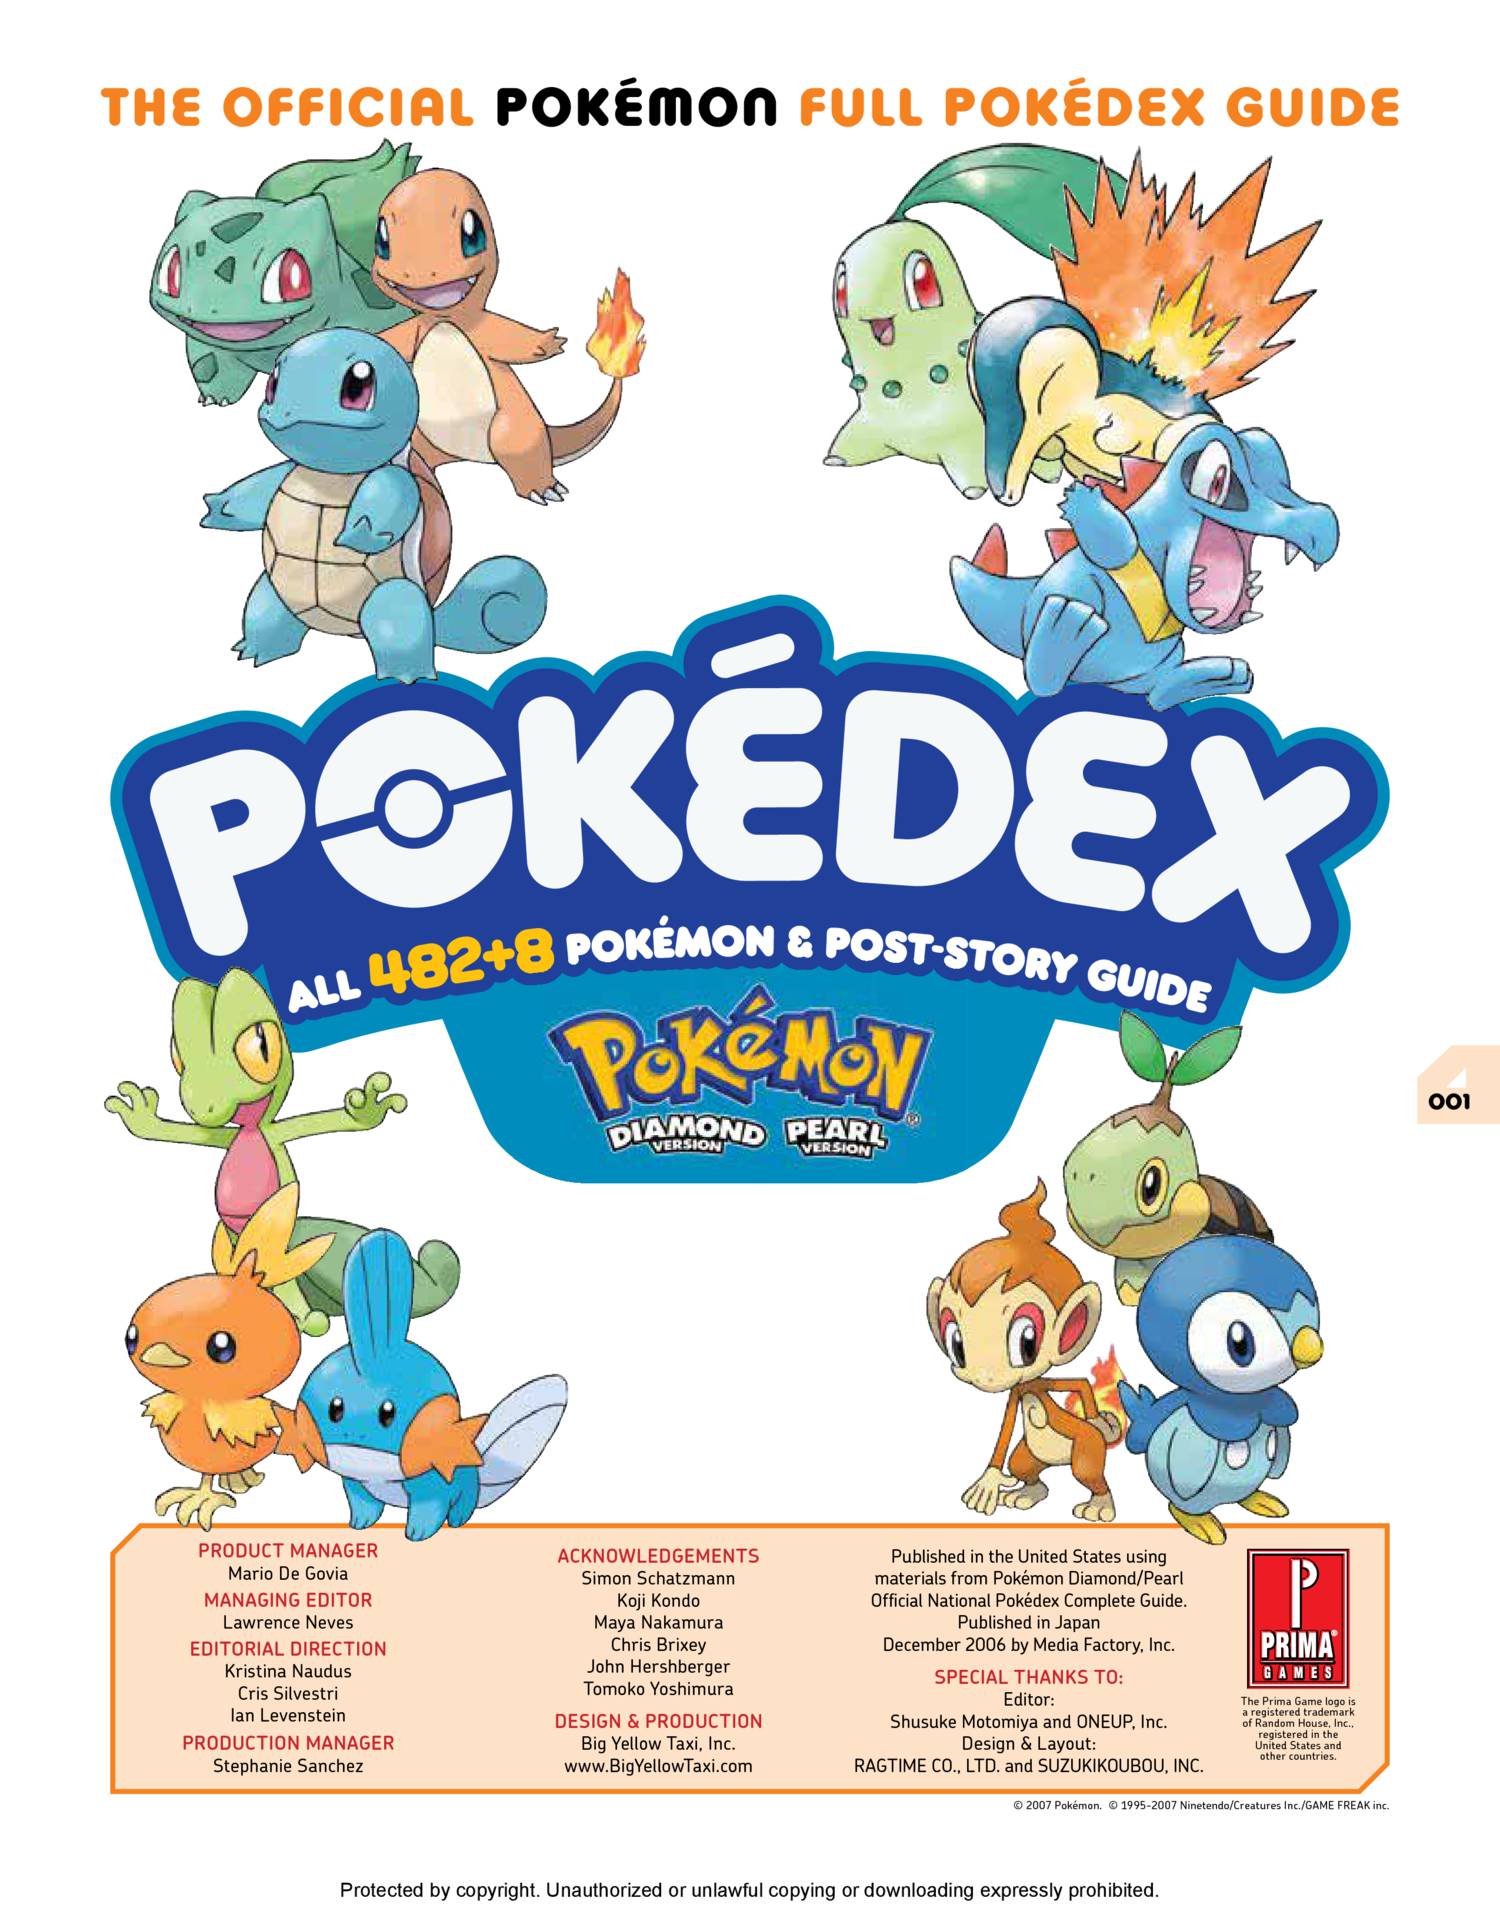 Pokemon Diamond & Pearls Pokedex. Pokedex features all the Pokemon